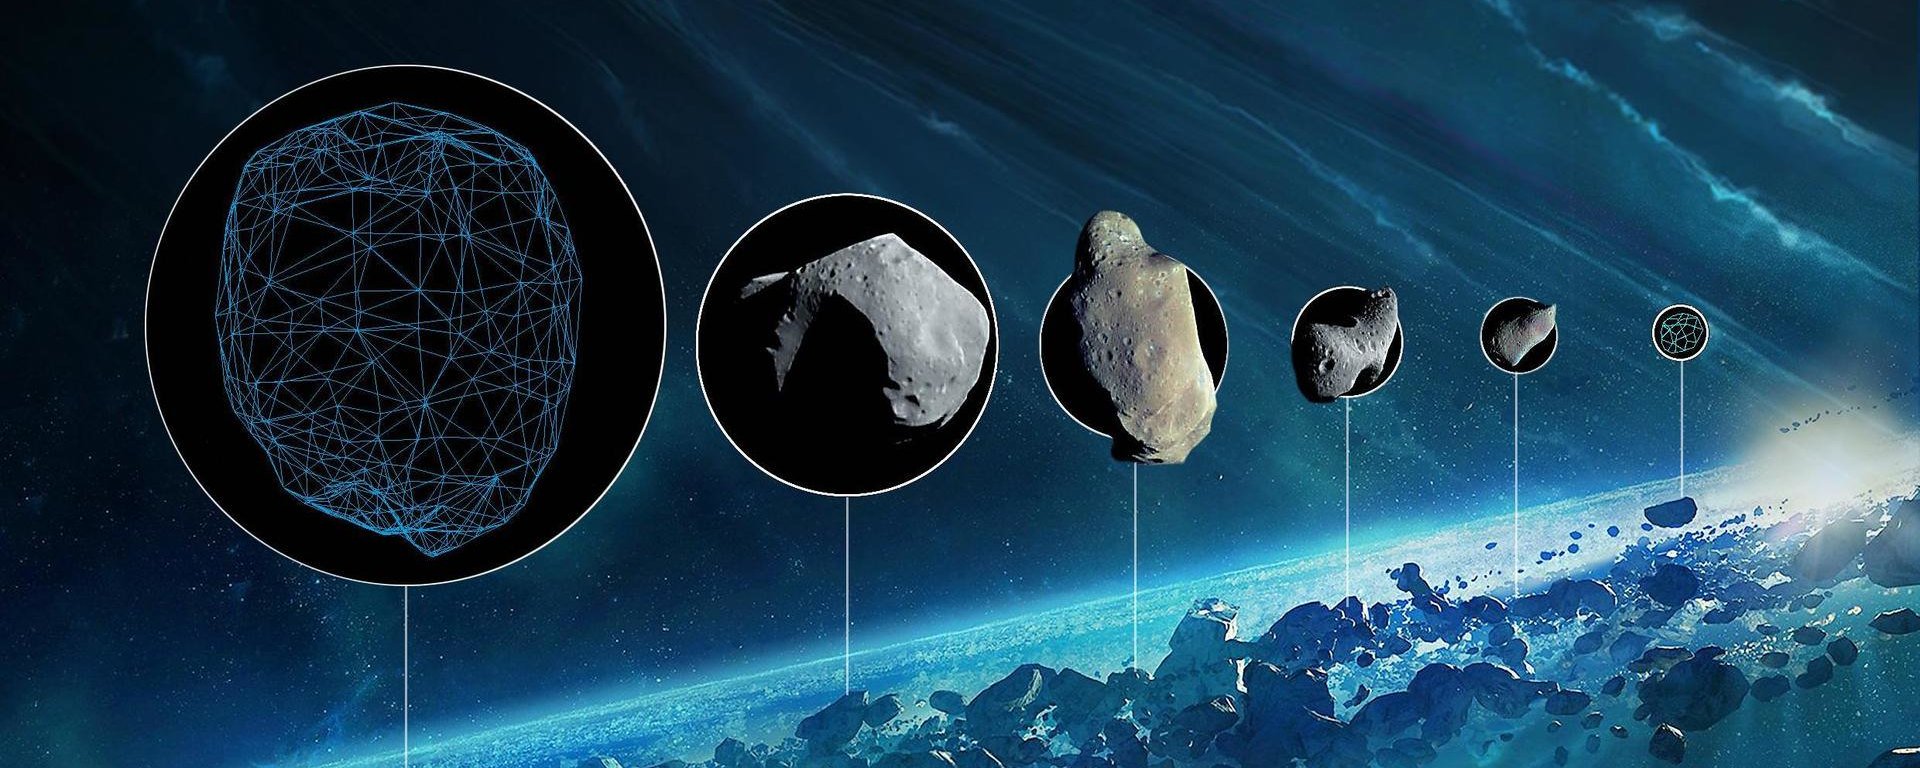 Hvis du ikke visste det: hva er forskjellen mellom en komet og asteroide?